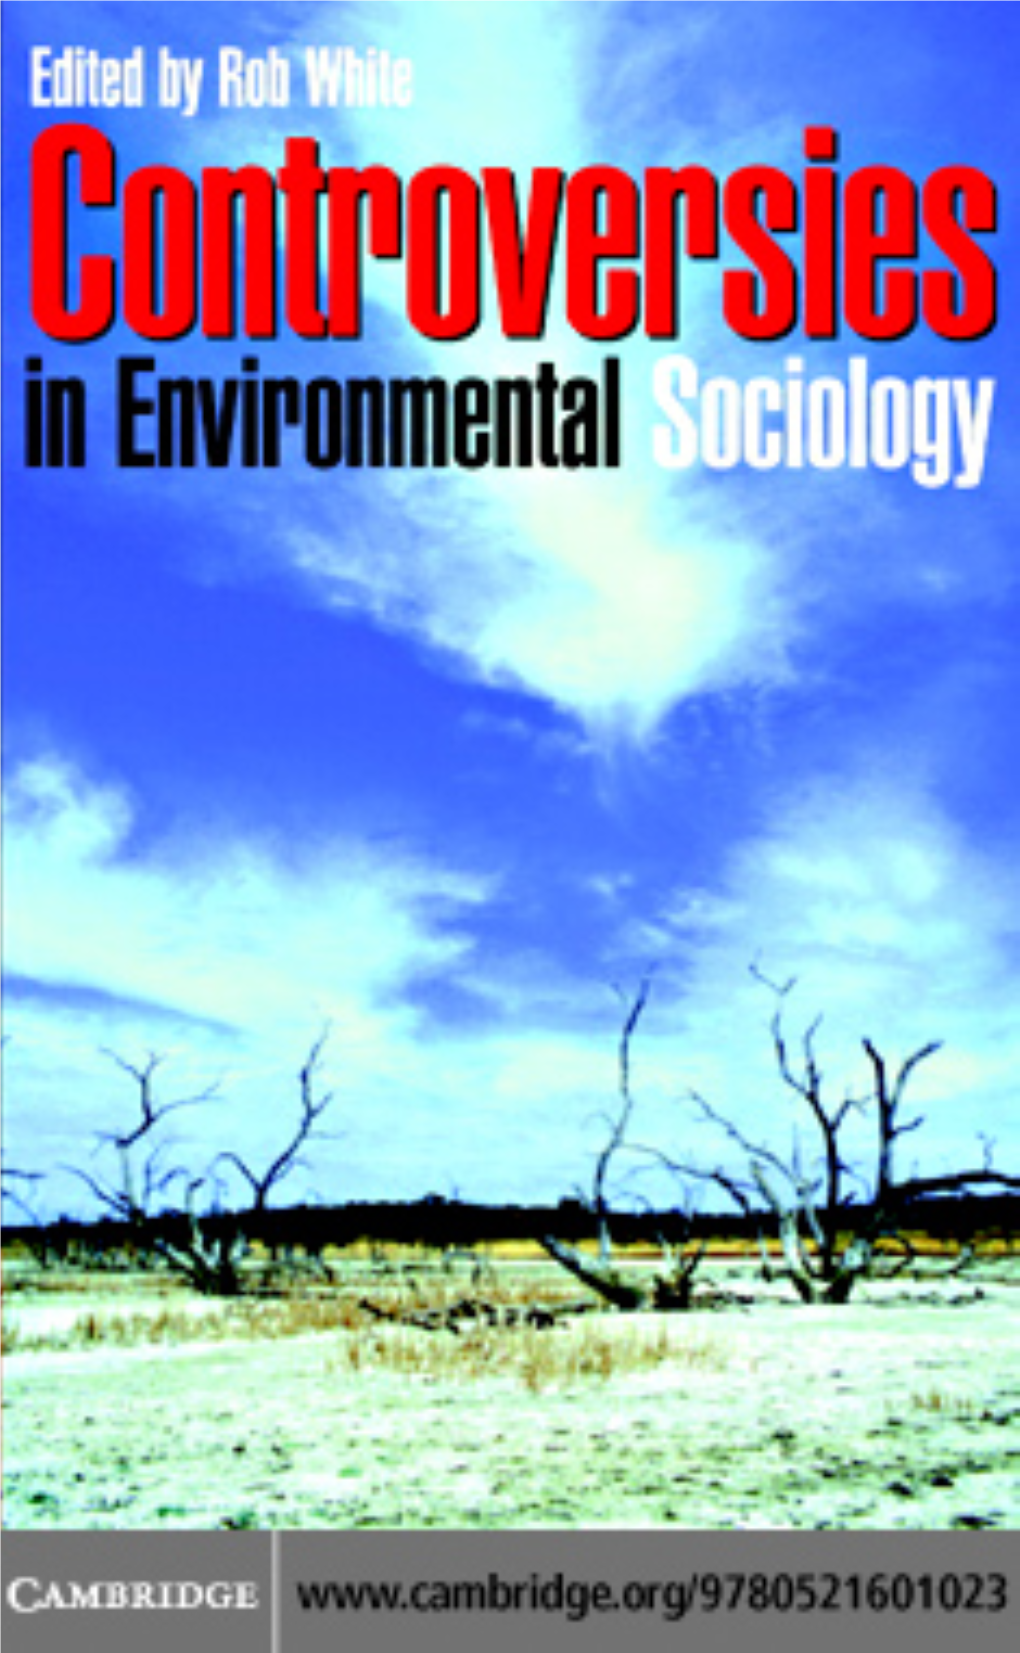 ENVIRONMENTAL SOCIOLOGY Controversies in Environmental